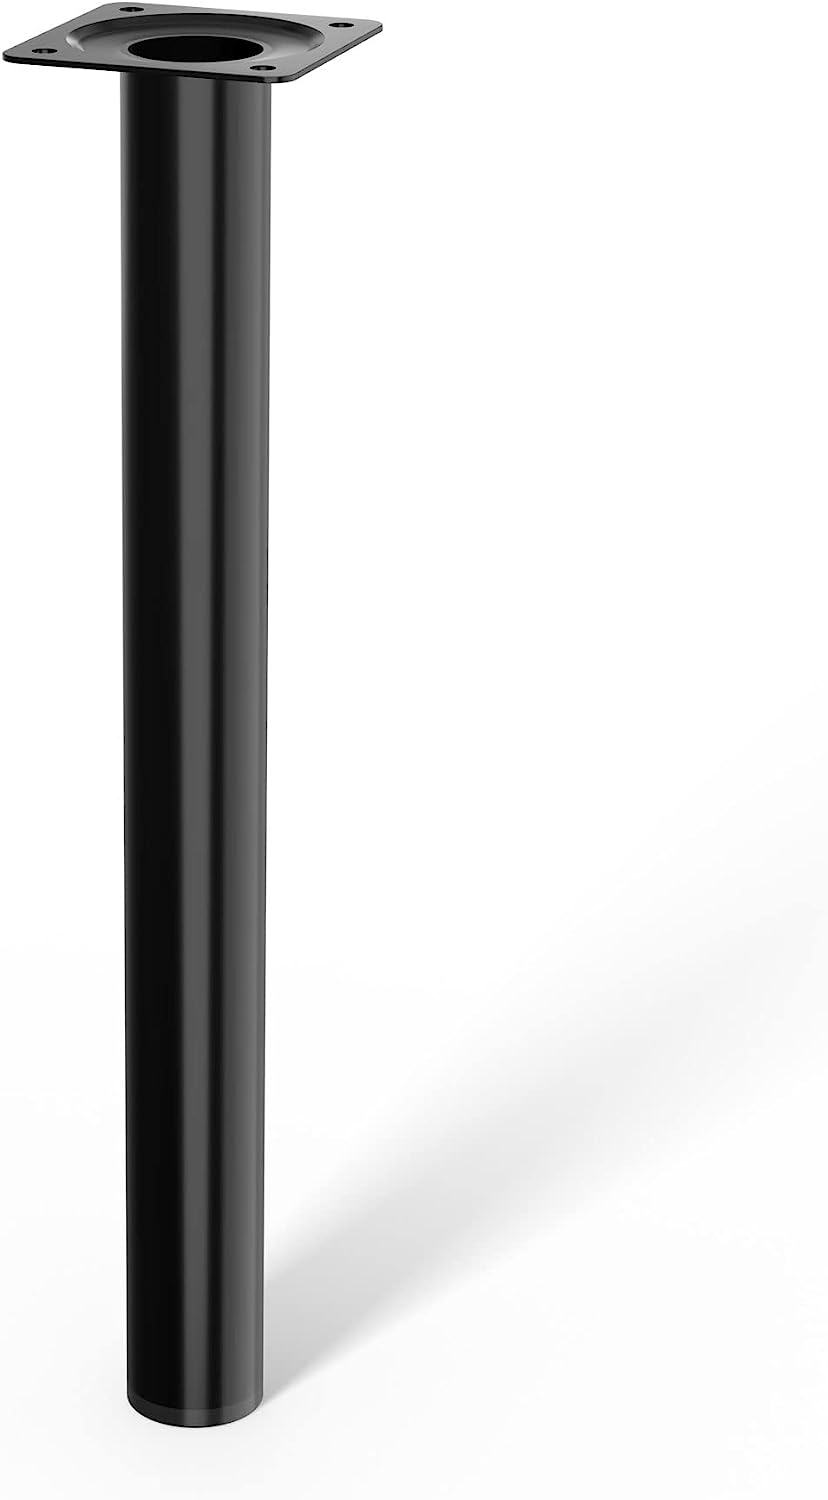 LouMaxx Tischbeine Metall rund – Stahlrohrfüße Ø 30 mm x 100mm inkl. Schrauben – Tischbeine schwarz mit Anschraubplatte – Hochwertige Tischfüße für individuelle DIY-Möbel – 4er Set in Schwarz